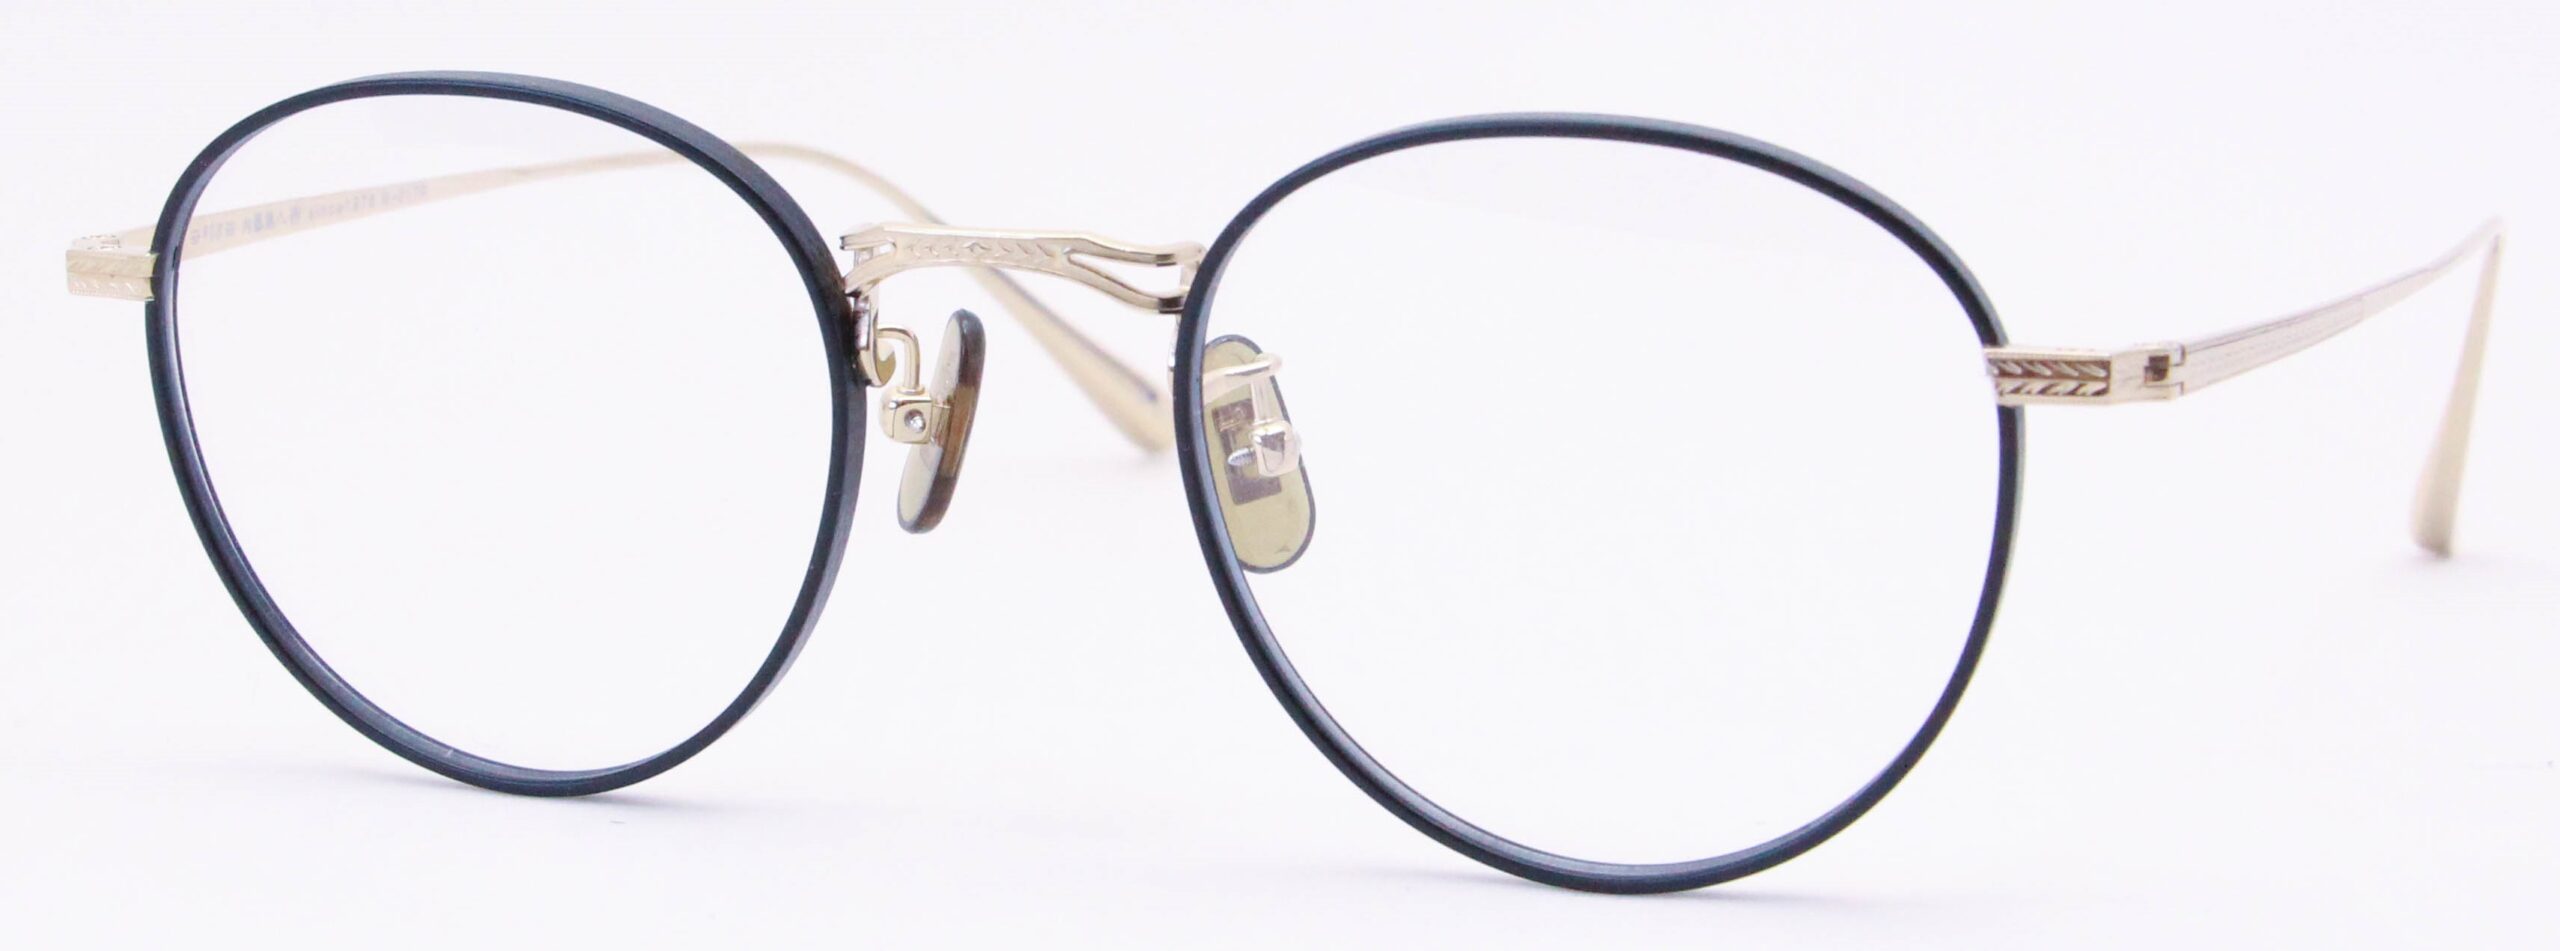 眼鏡のカラータイプC-1 Black-Matt/Gold